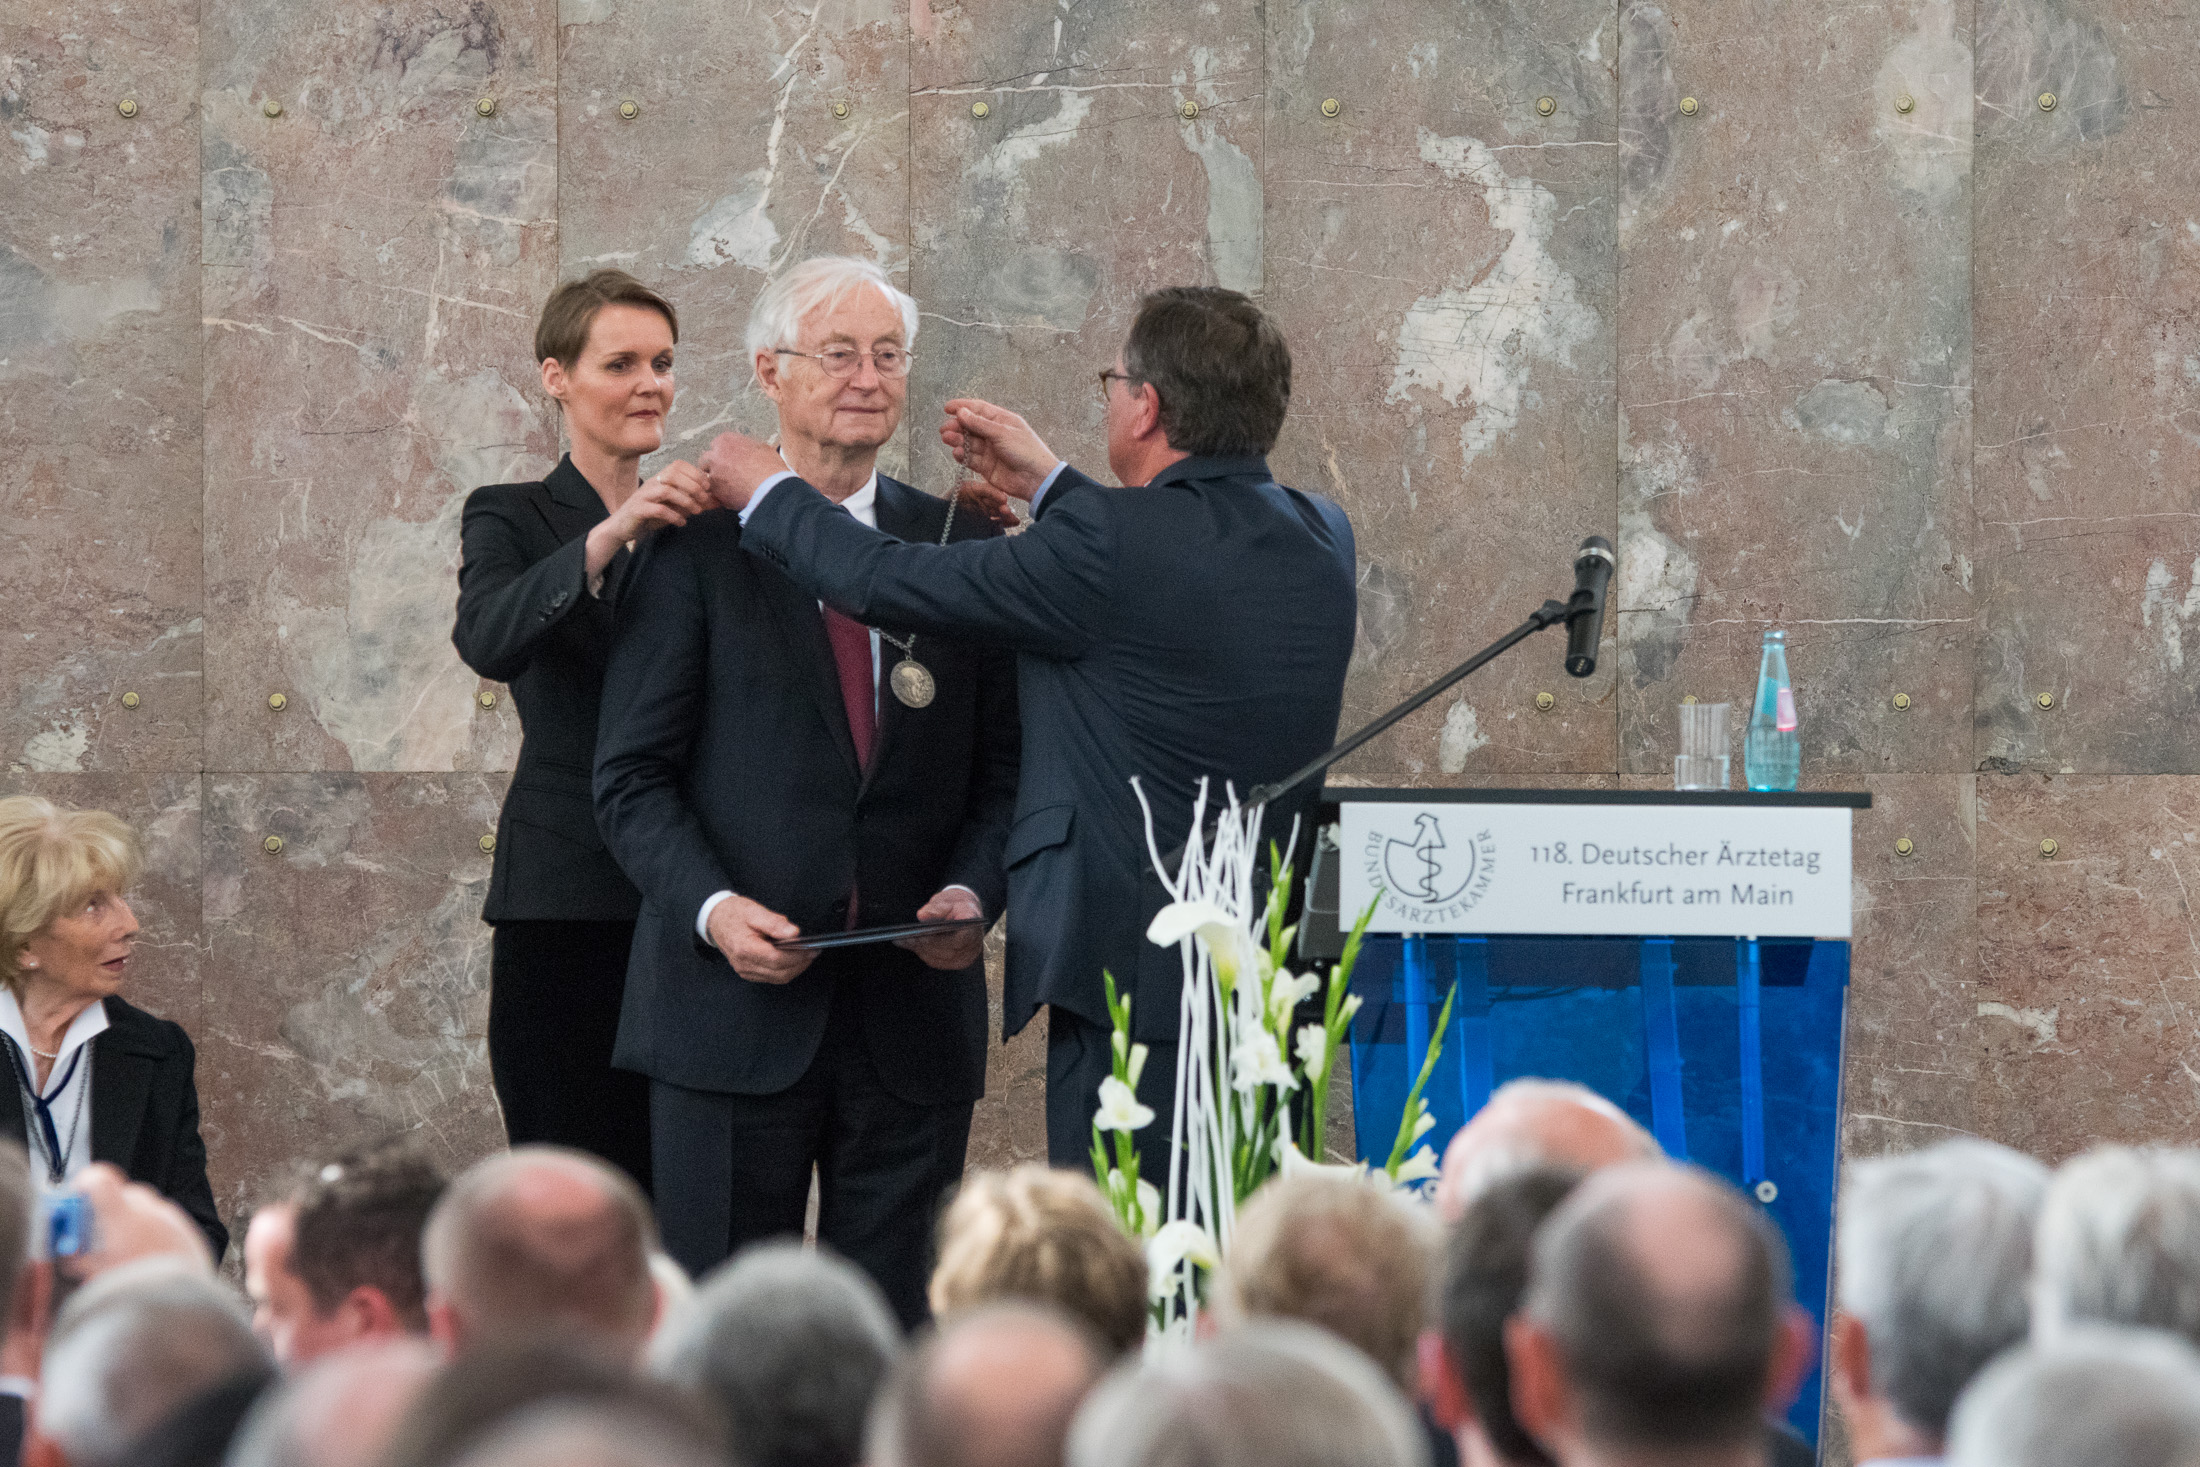 Prof. Dr. med. Dr. h. c. Peter C. Scriba erhält die Paracelsus-Medaille der deutschen Ärztetag auf dem 118. Deutschen Ärztetag 2015 in Franfurt am Main